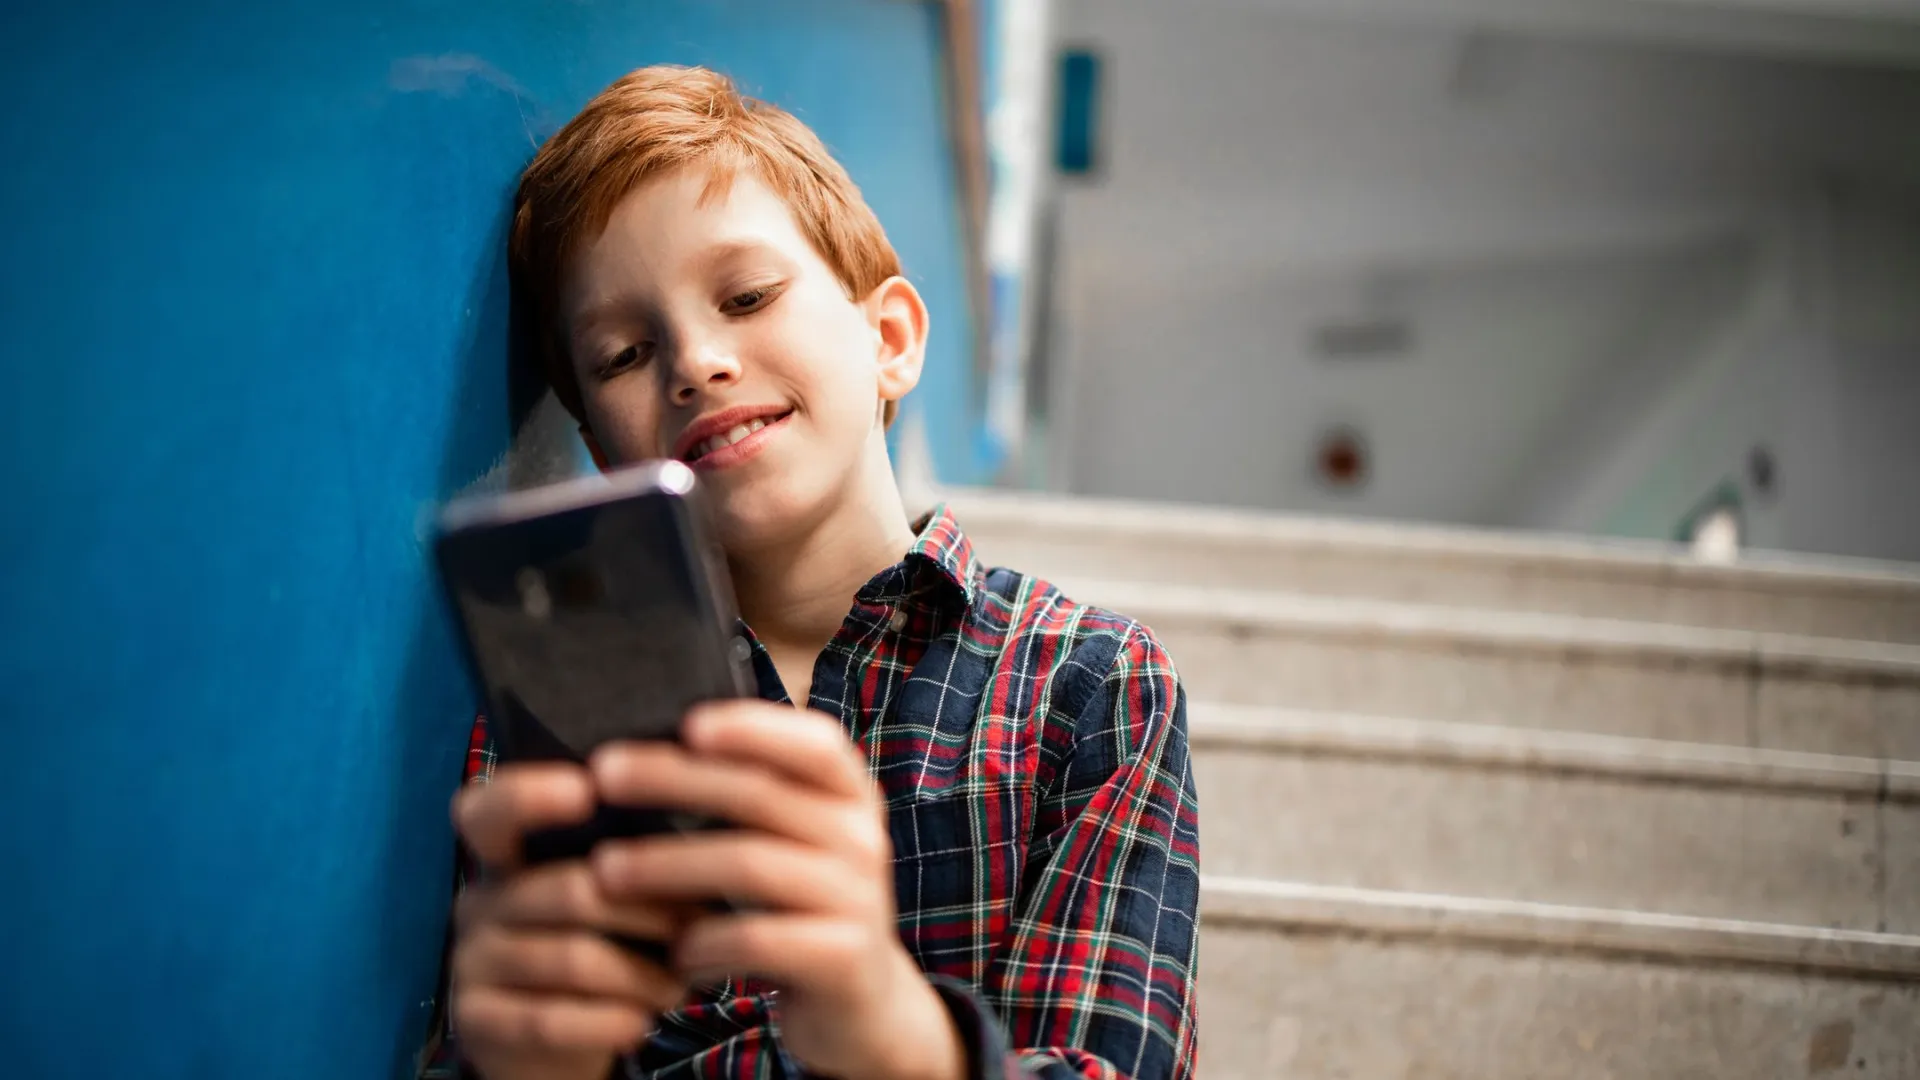 Безопасность использования мобильника — главное, что учитывают родители при покупке гаджета и установке приложений. Фото: Aleksandar Malivuk / shutterstock / Фотодом